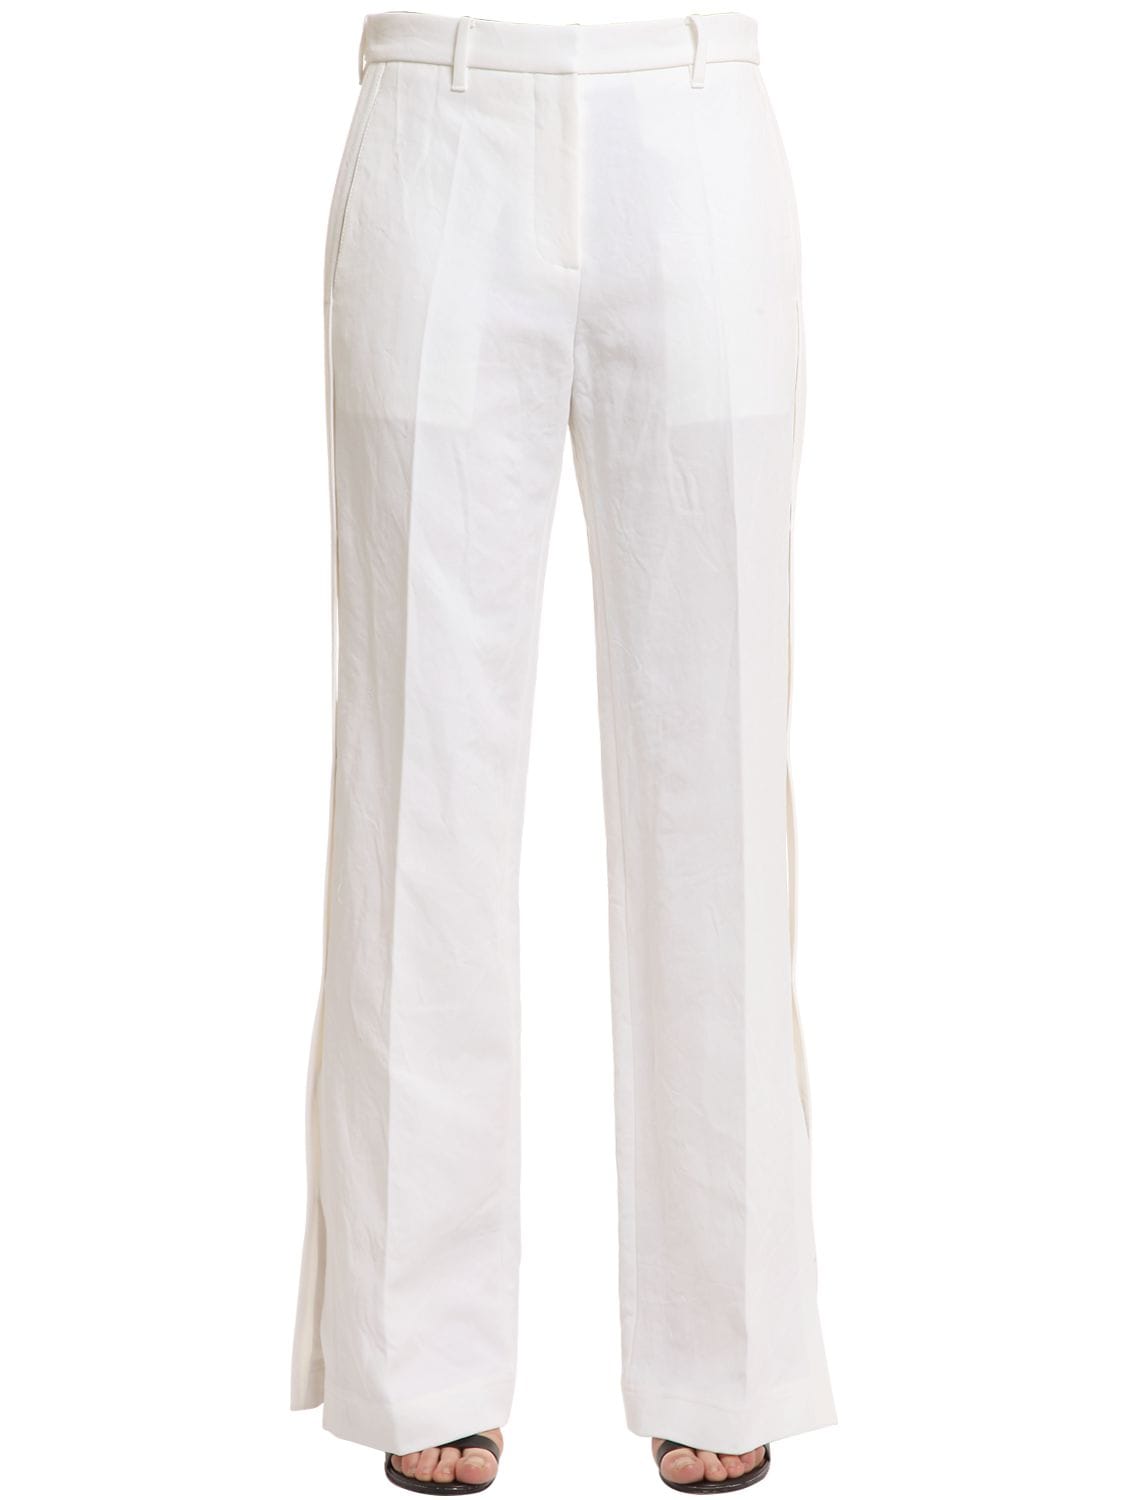 Dry Cotton Tailoring Pants - CALVIN KLEIN COLLECTION - Modalova